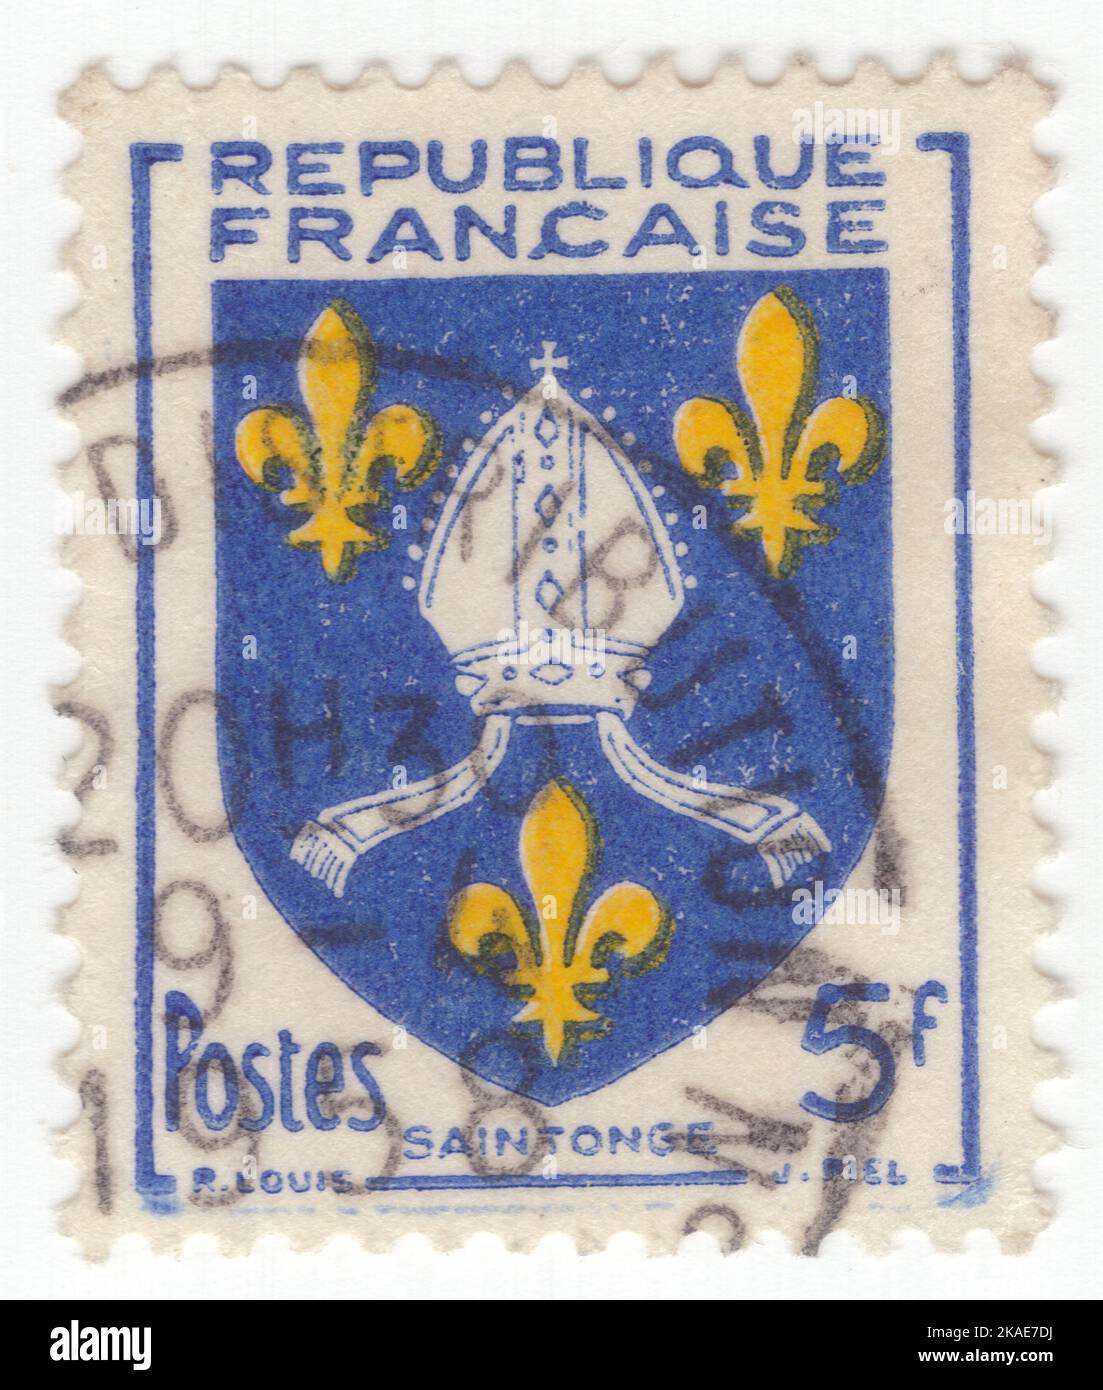 FRANKREICH - 1954: Eine 5 Franken blaue und gelbe Briefmarke, die den Arm der Grafschaft Saintonge darstellt, ist eine ehemalige Provinz Frankreichs an der westlichen zentralen Atlantikküste. Die Hauptstadt war Saintes (Xaintes, Xainctes). Weitere Hauptstädte sind Saint-Jean-d'Angély, Jonzac, Frontenay-Rohan-Rohan, Royan, Marennes, Pons und Barbezieux-Saint-Hilaire Stockfoto